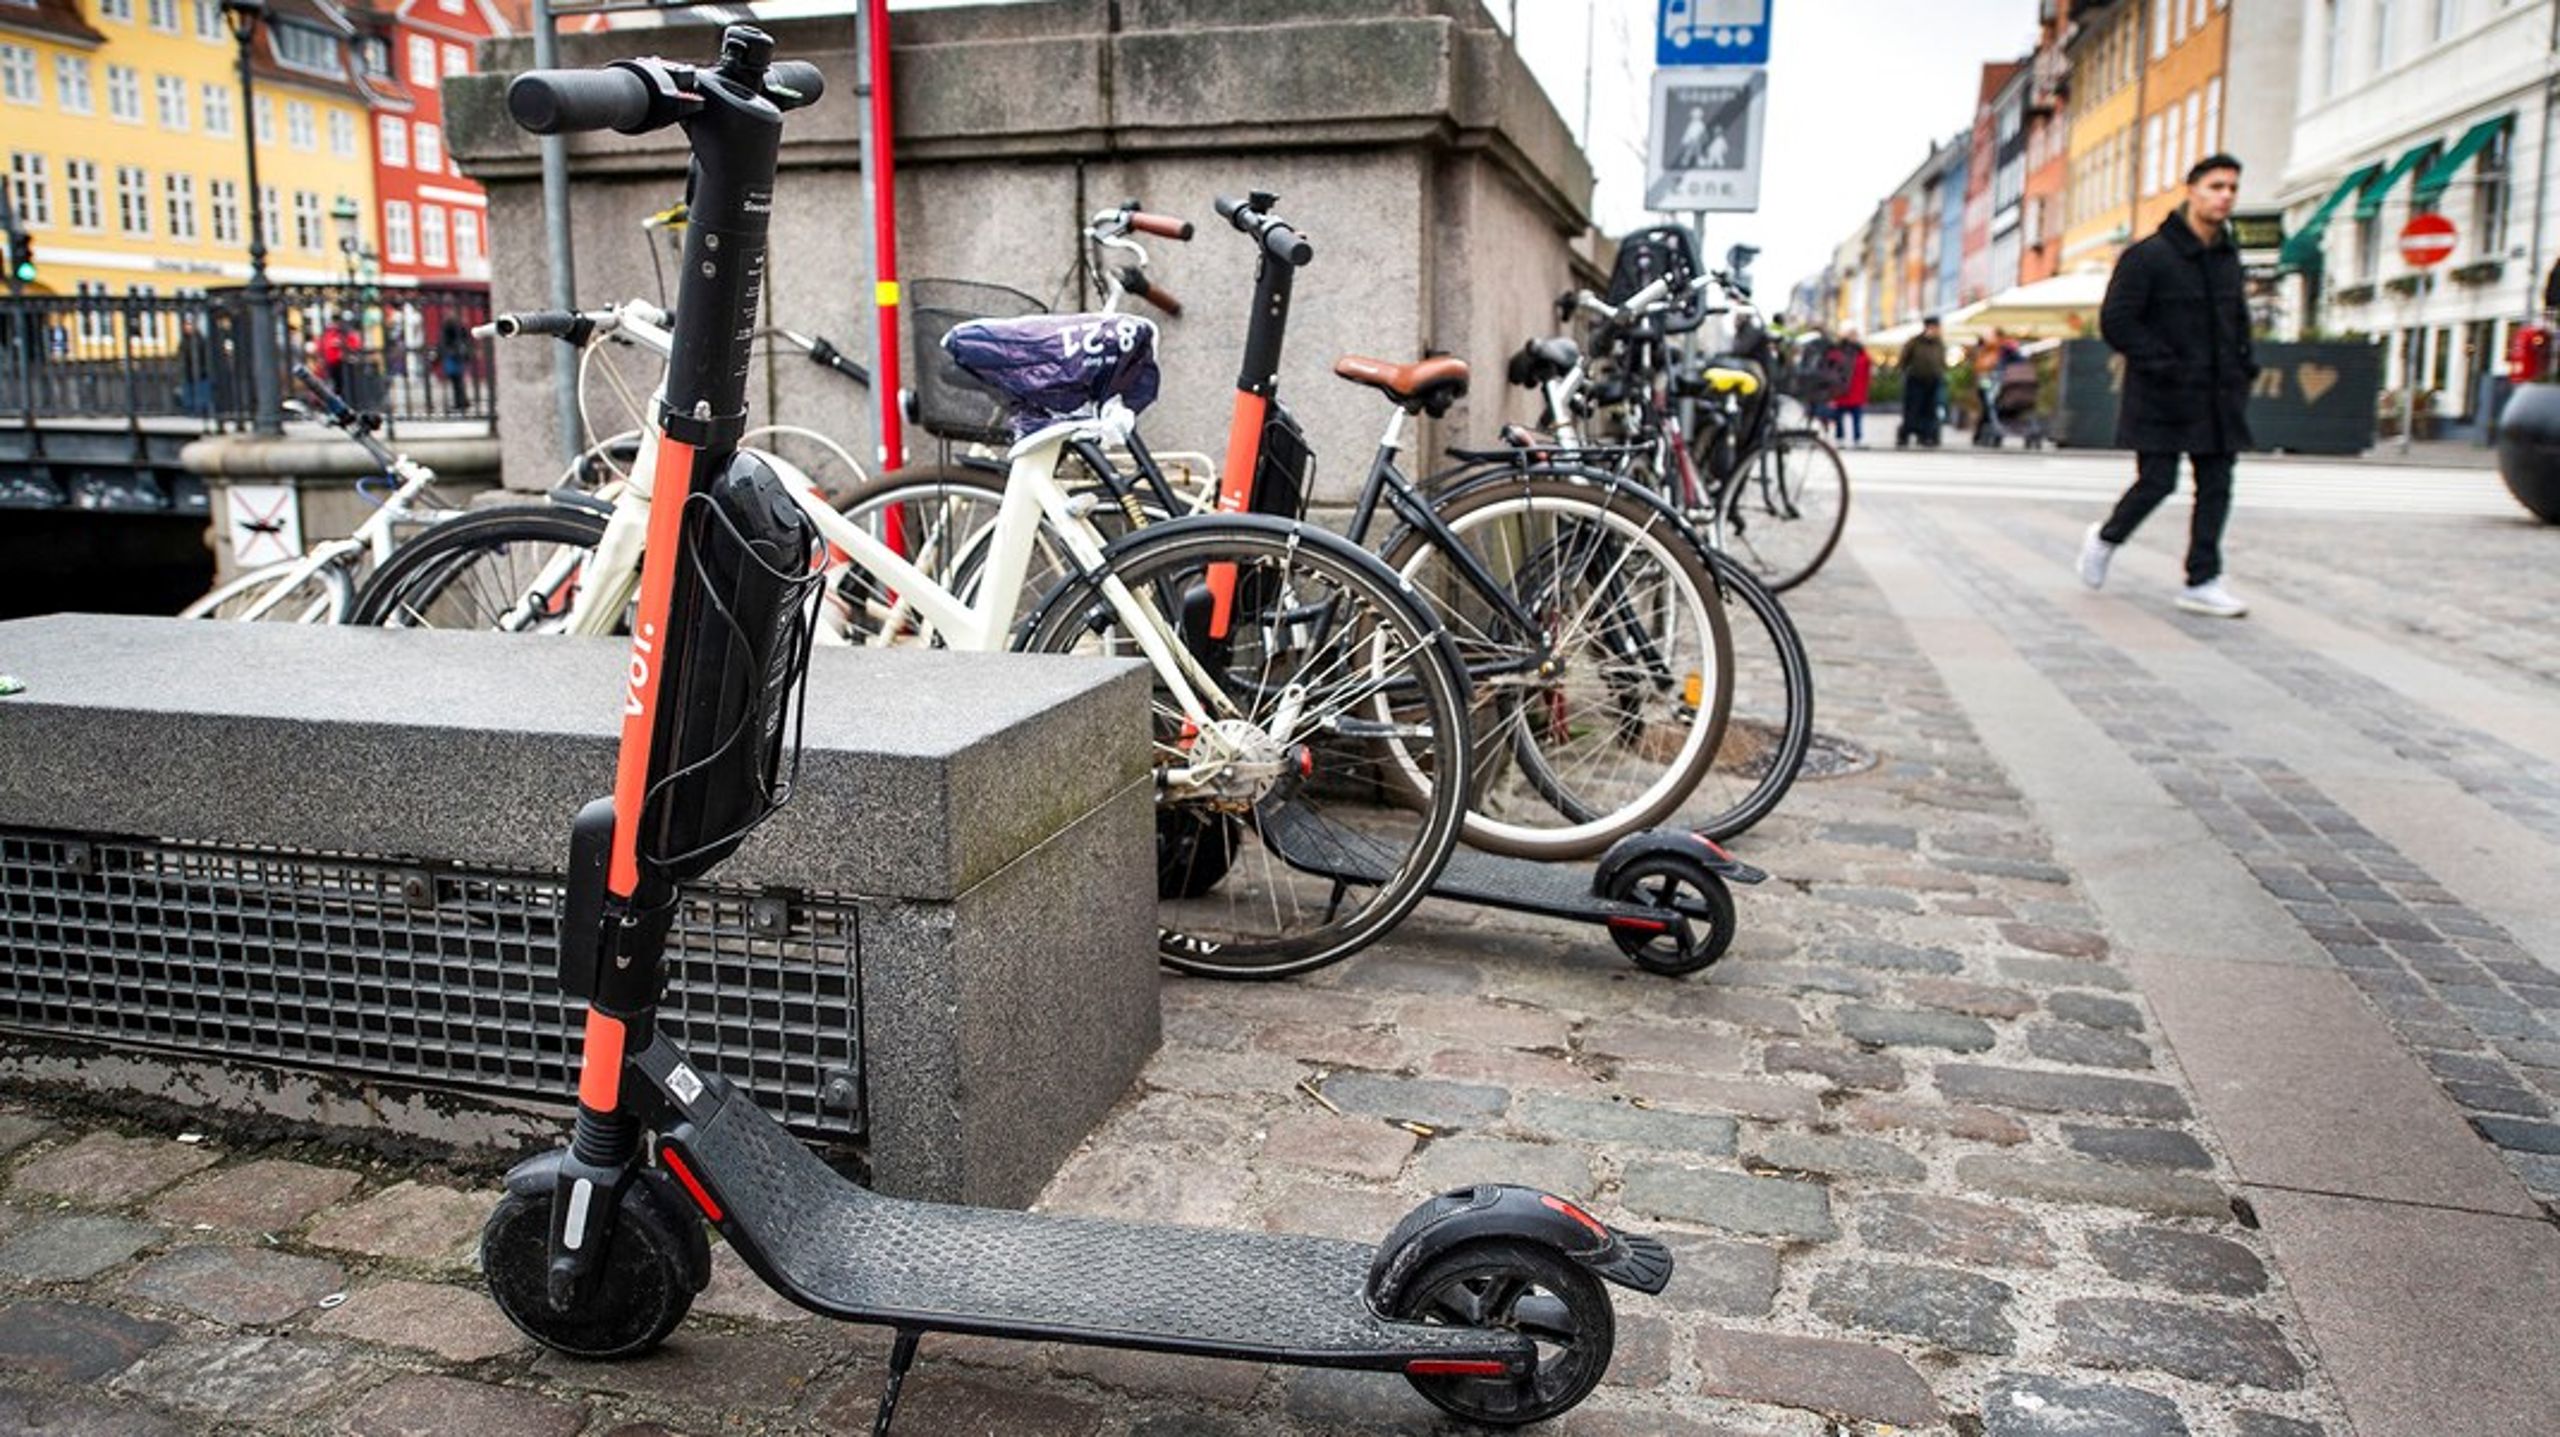 Flere partnerskaber til elcykler og -løbehjul er nødvendige for at styrke mikromobiliteten i byerne, skriver IT-Branchen og Dansk Erhverv.